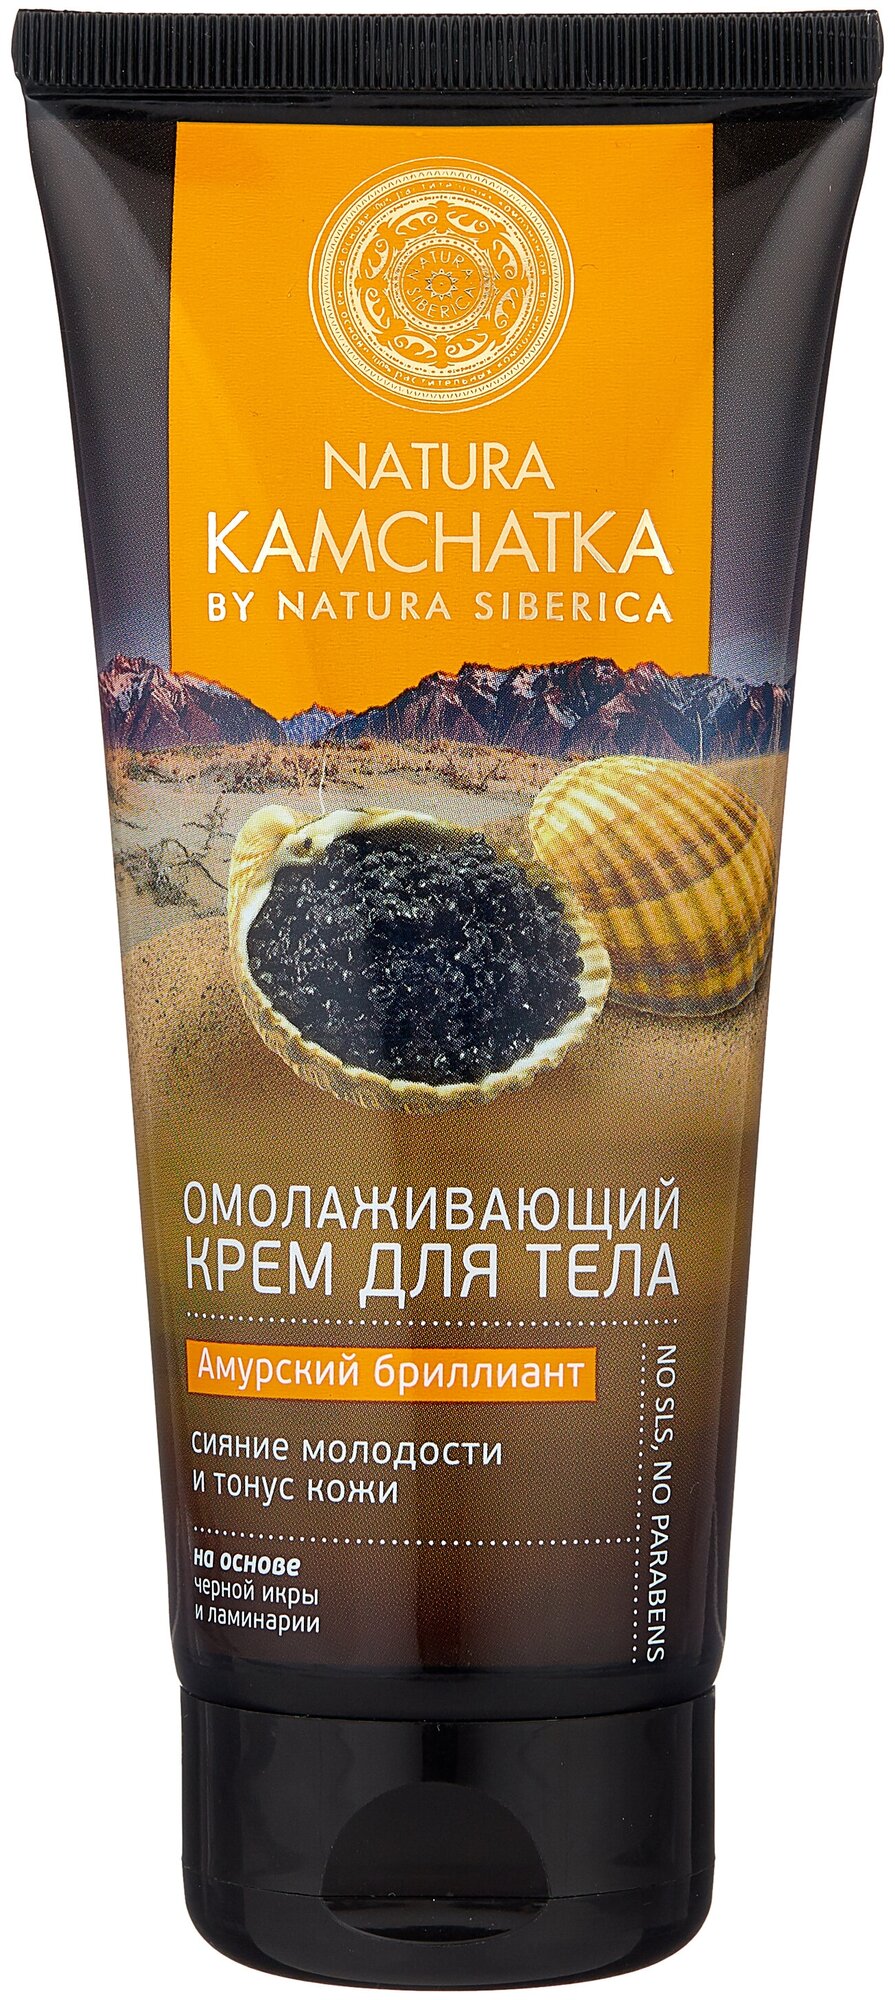 Natura Siberica Крем для тела Амурский бриллиант Сияние молодости и тонус кожи Натура Камчатка